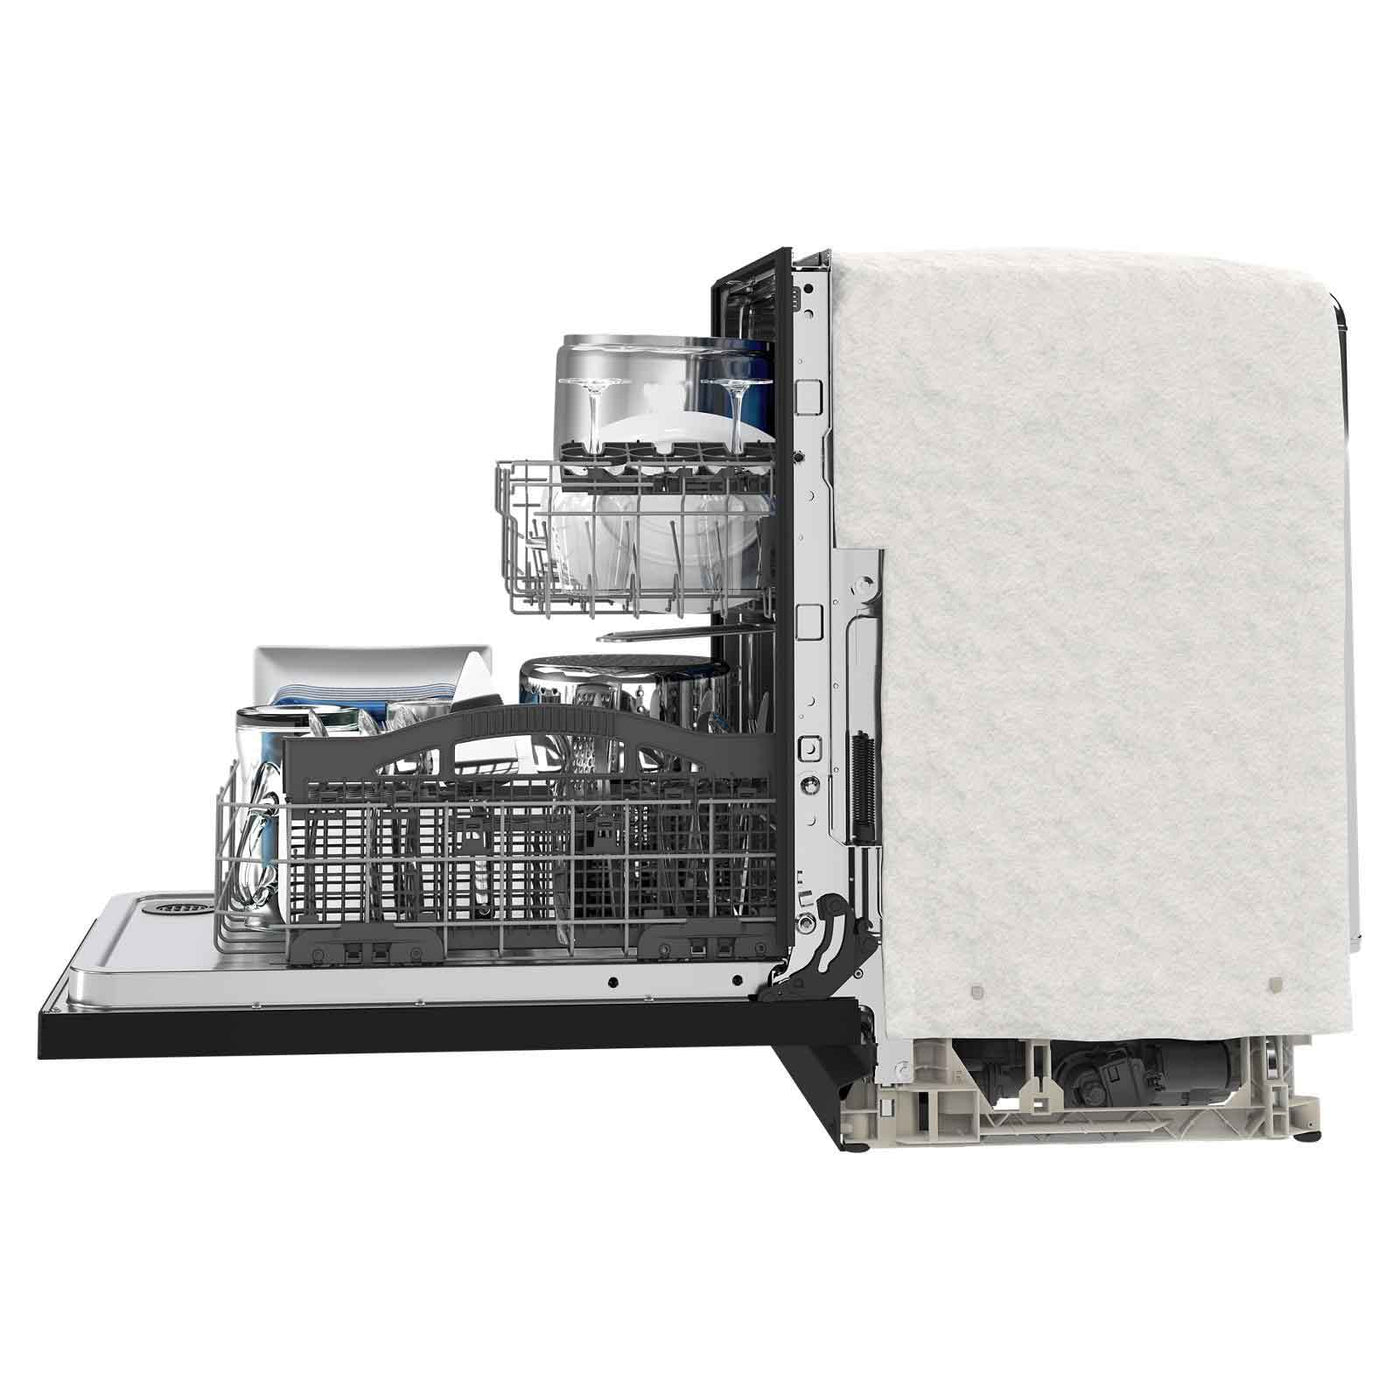 Maytag 24" Black dishwasher with Dual Power filtration (50 dBA) - MDB4949SKB